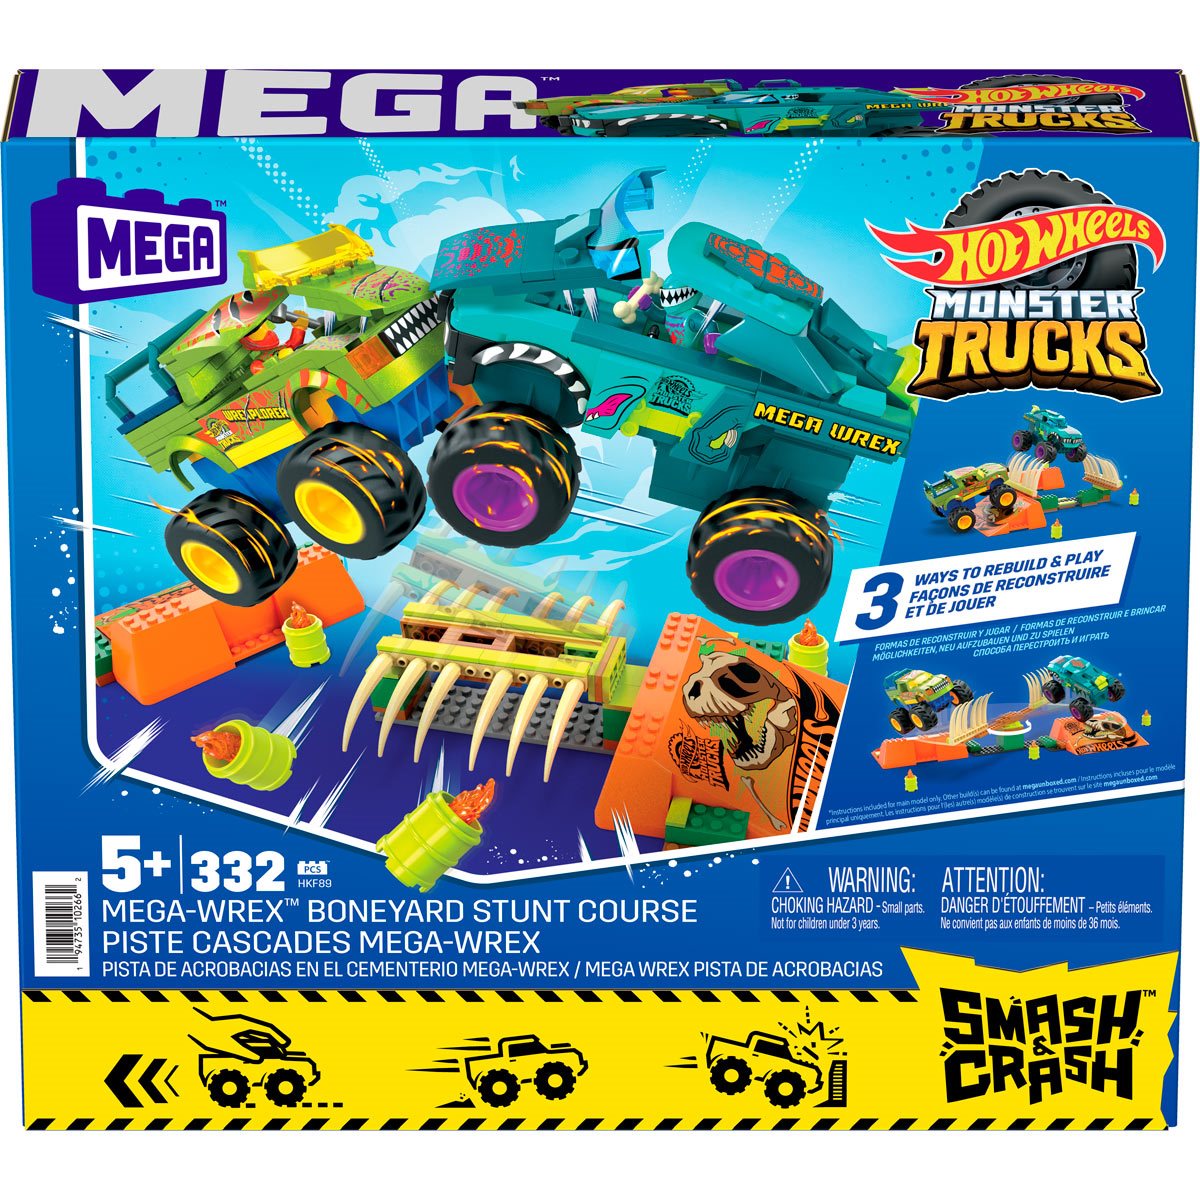 Hot Wheels Mega Smash 'N Crash Gunkster Monster Truck